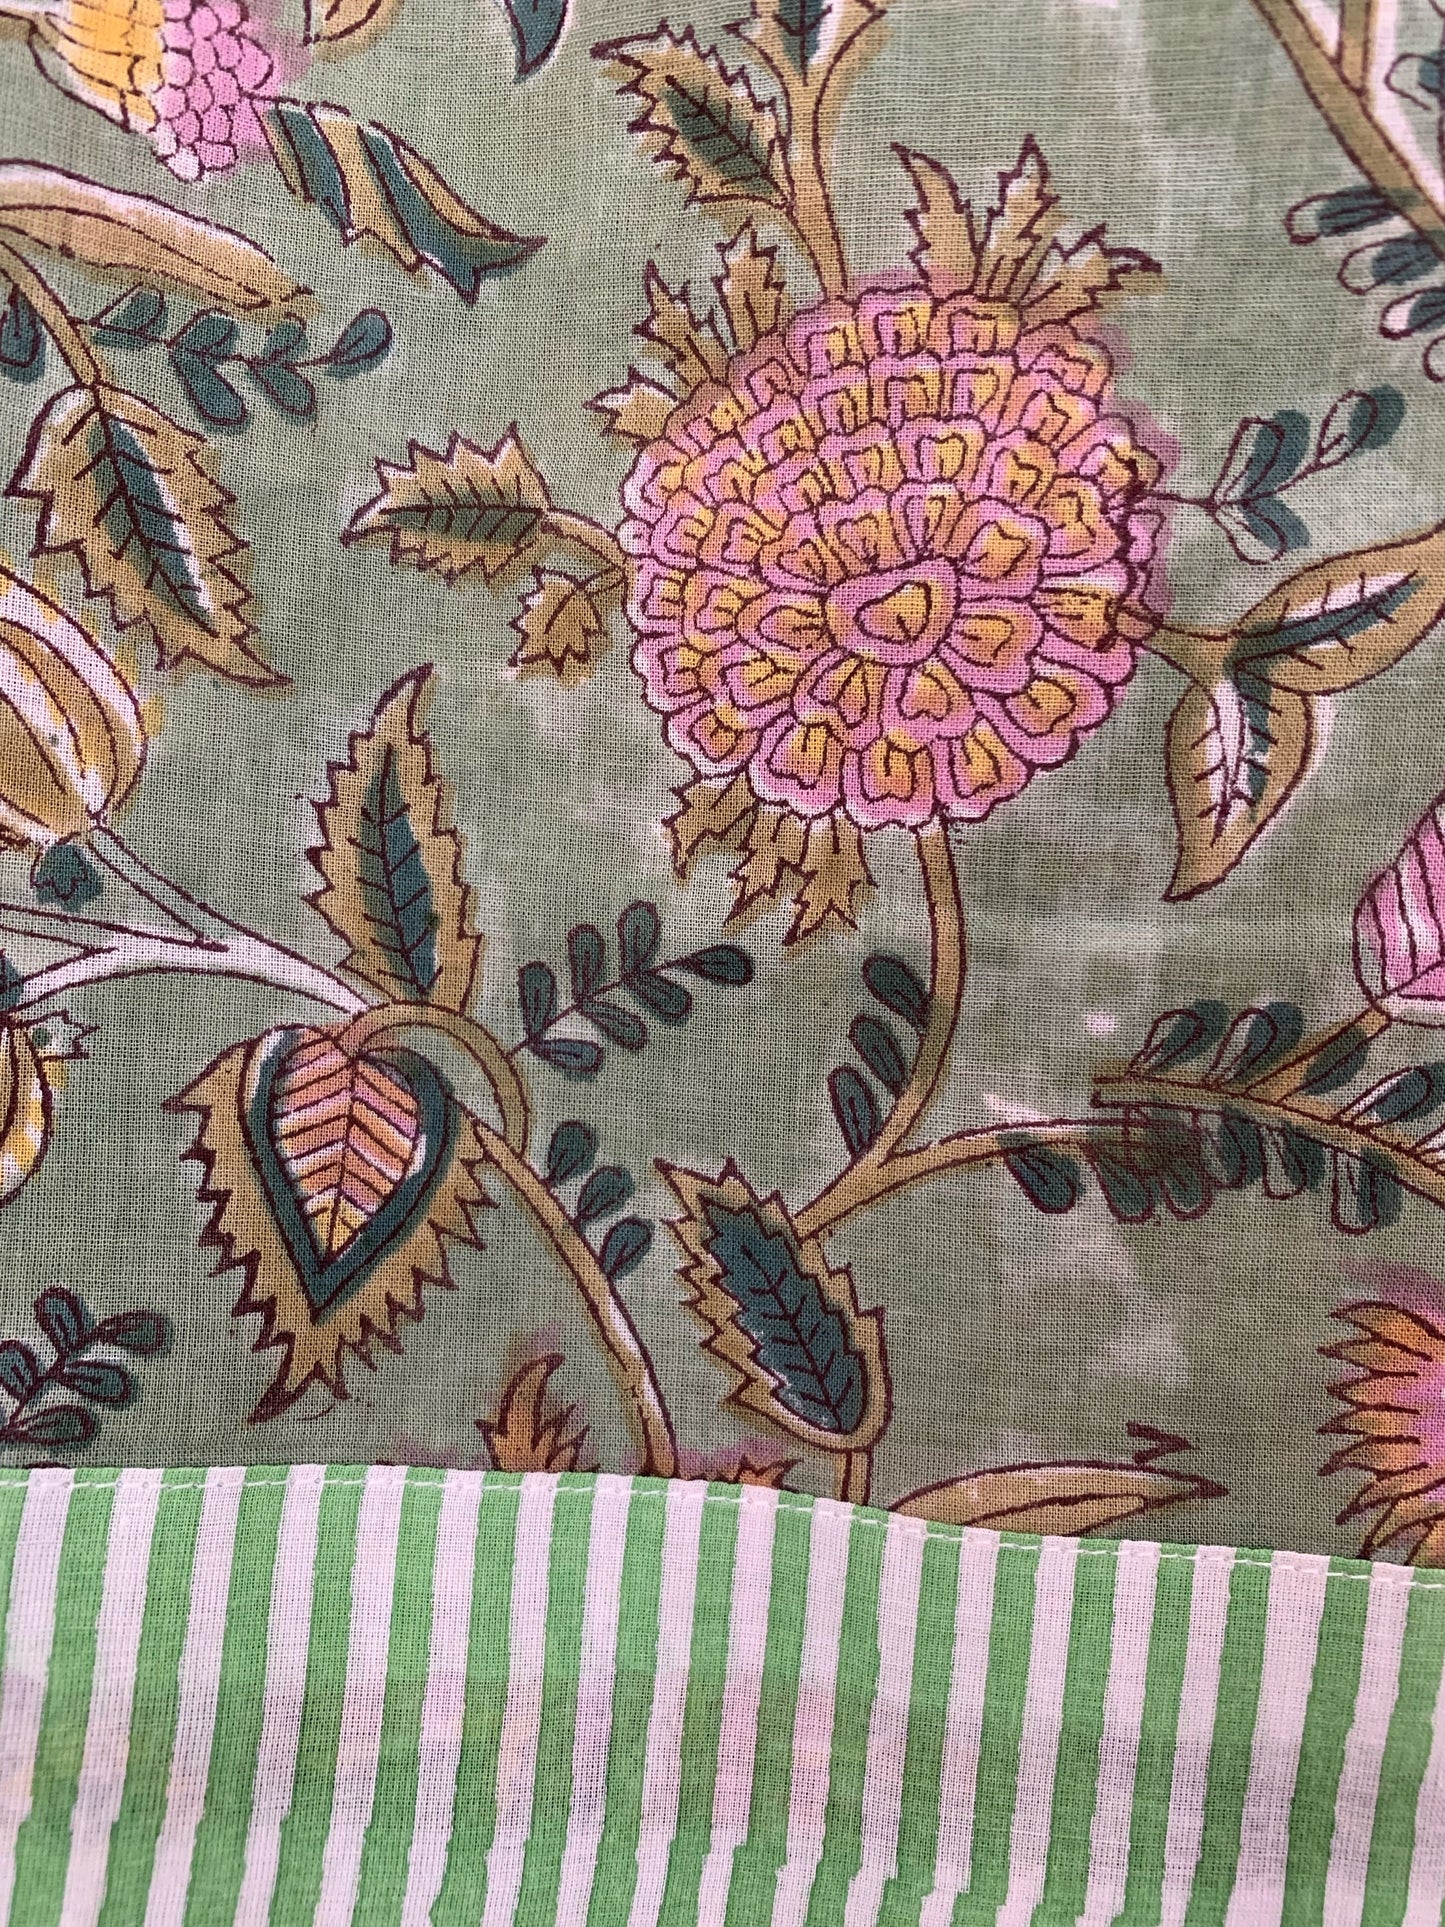 SET regalo · Bata kimono & zapatillas a juego · Algodón puro 100% estampado block print artesanal en India · Verde y rosa mix